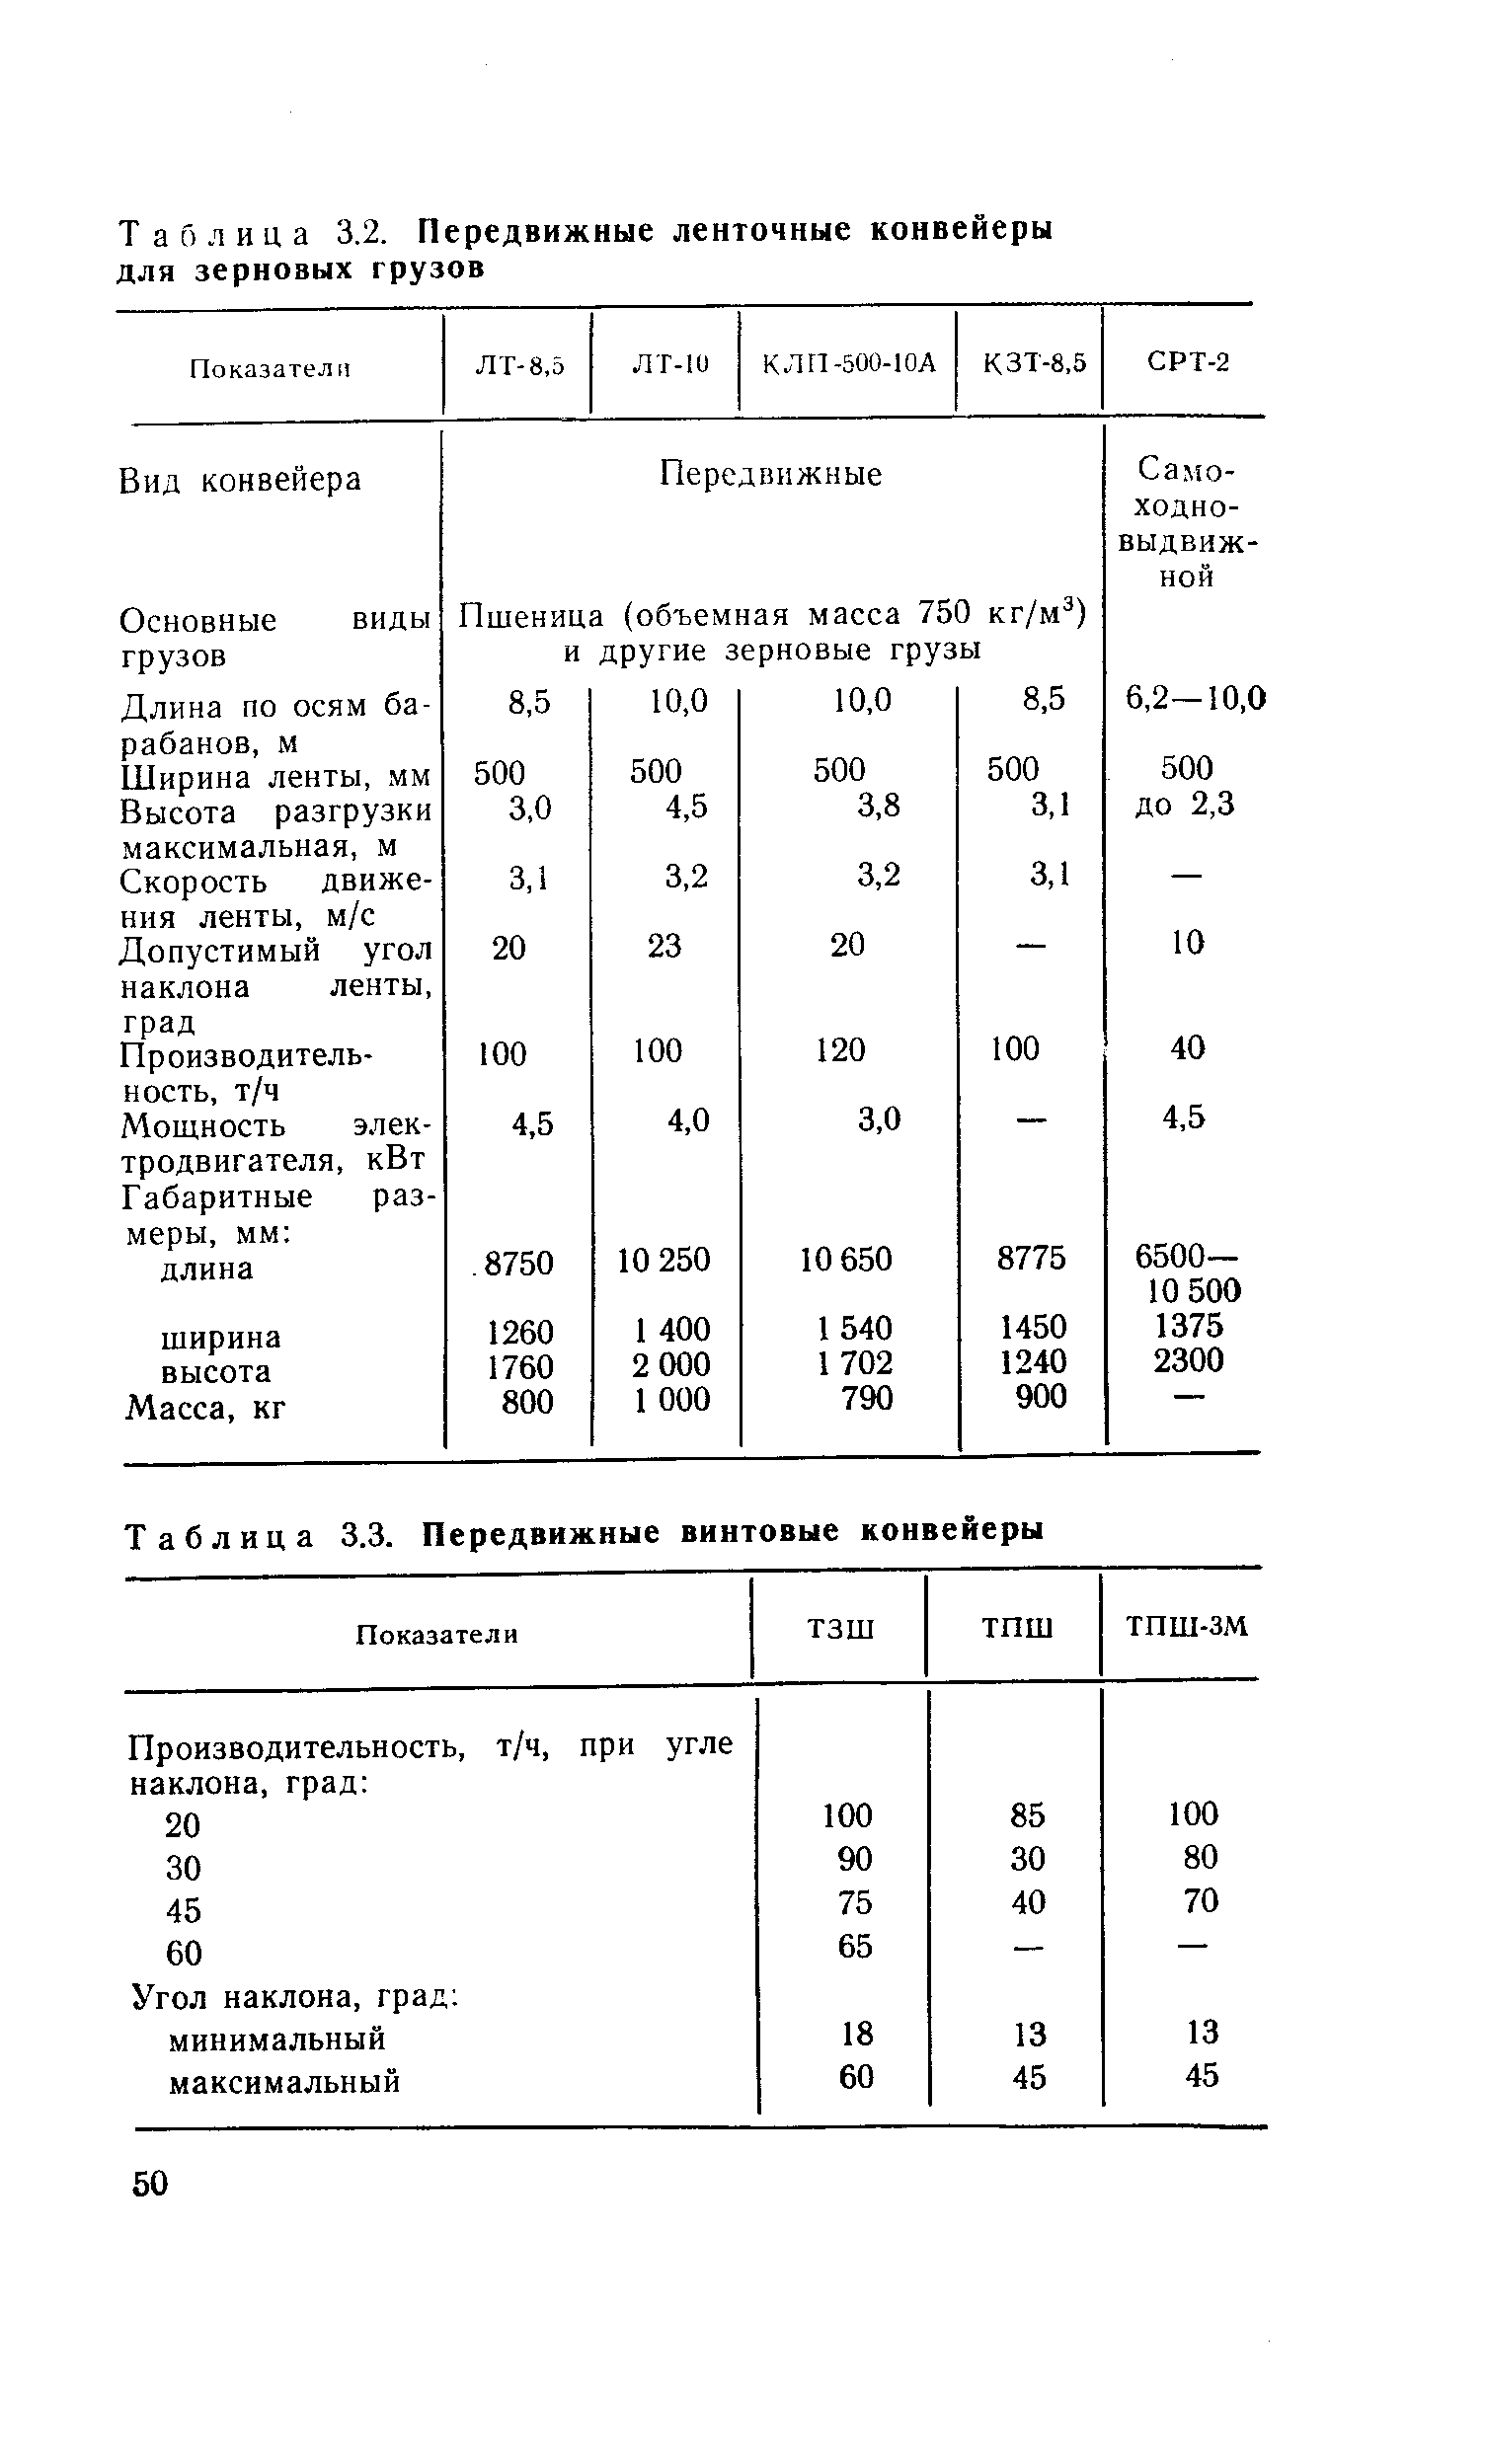 Таблица 3.3. Передвижные винтовые конвейеры
